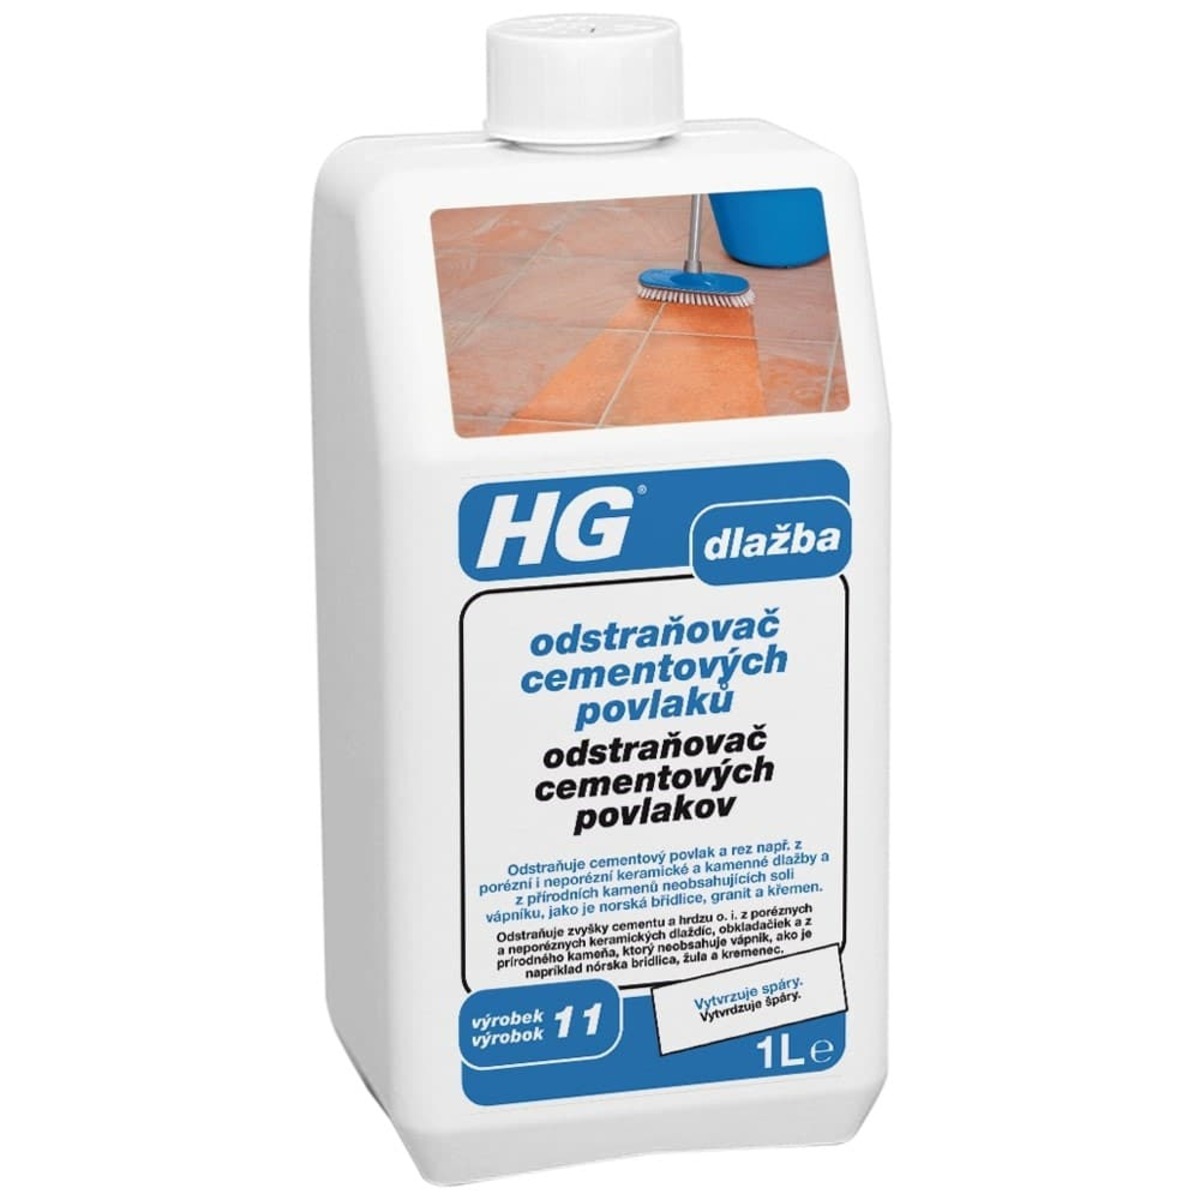 HG odstraňovač cementových povlaků HGOCP HG